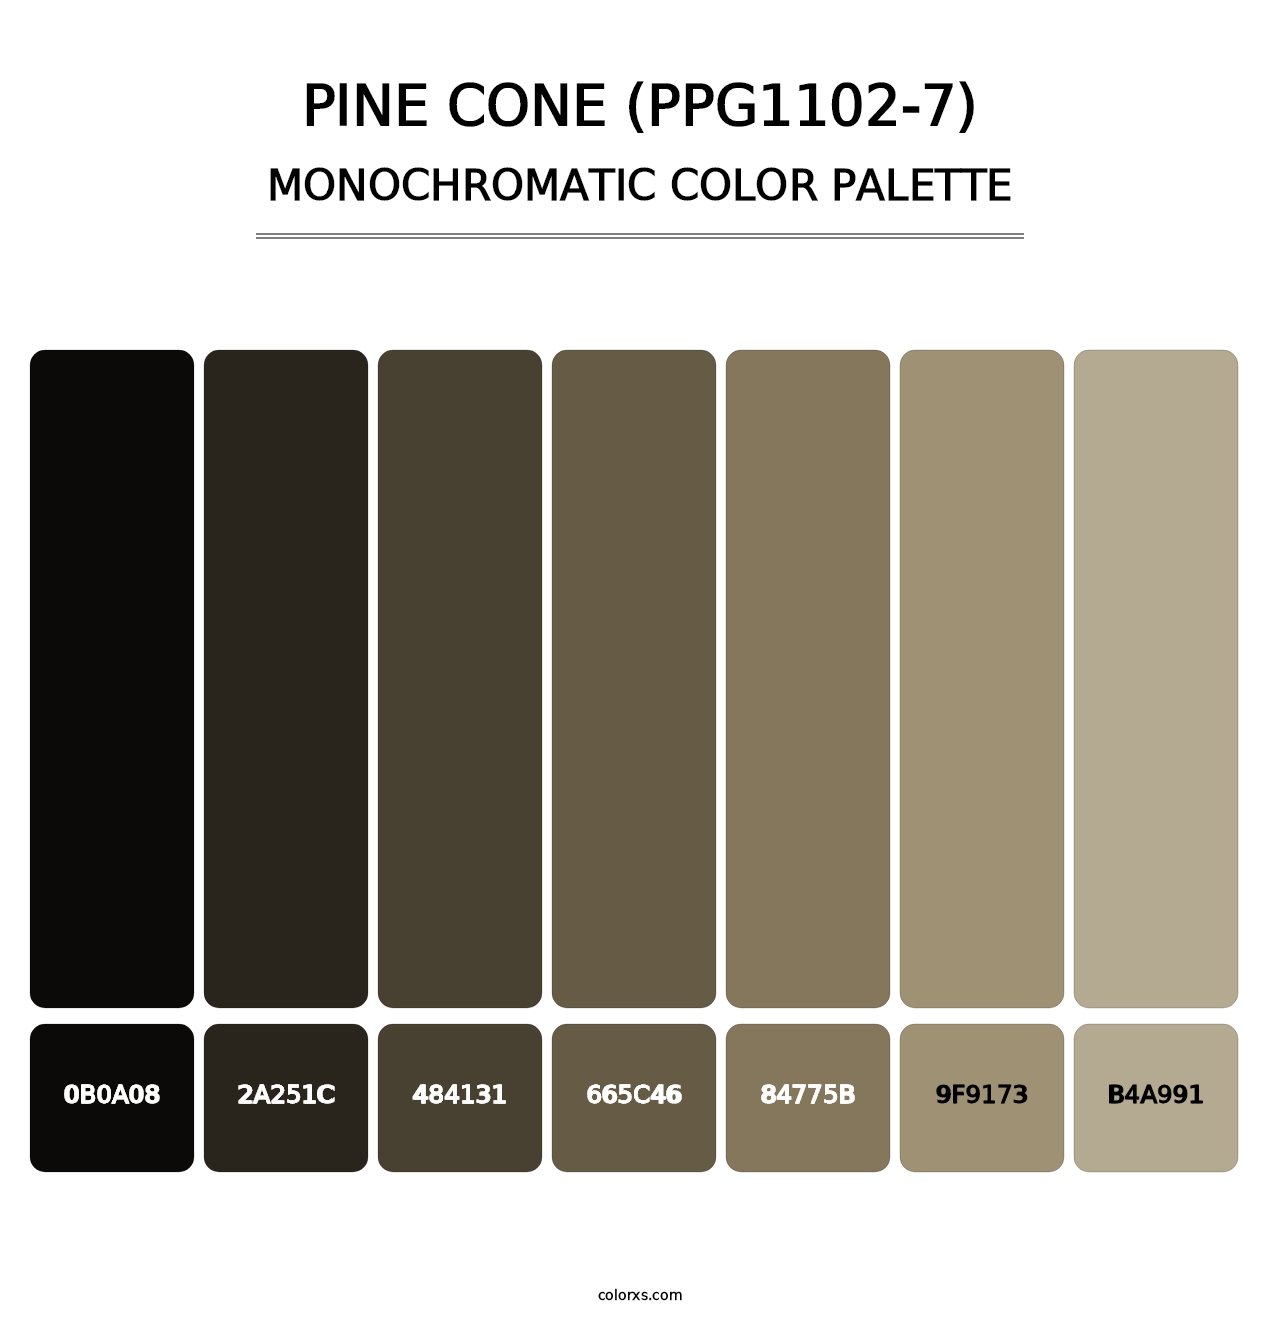 Pine Cone (PPG1102-7) - Monochromatic Color Palette